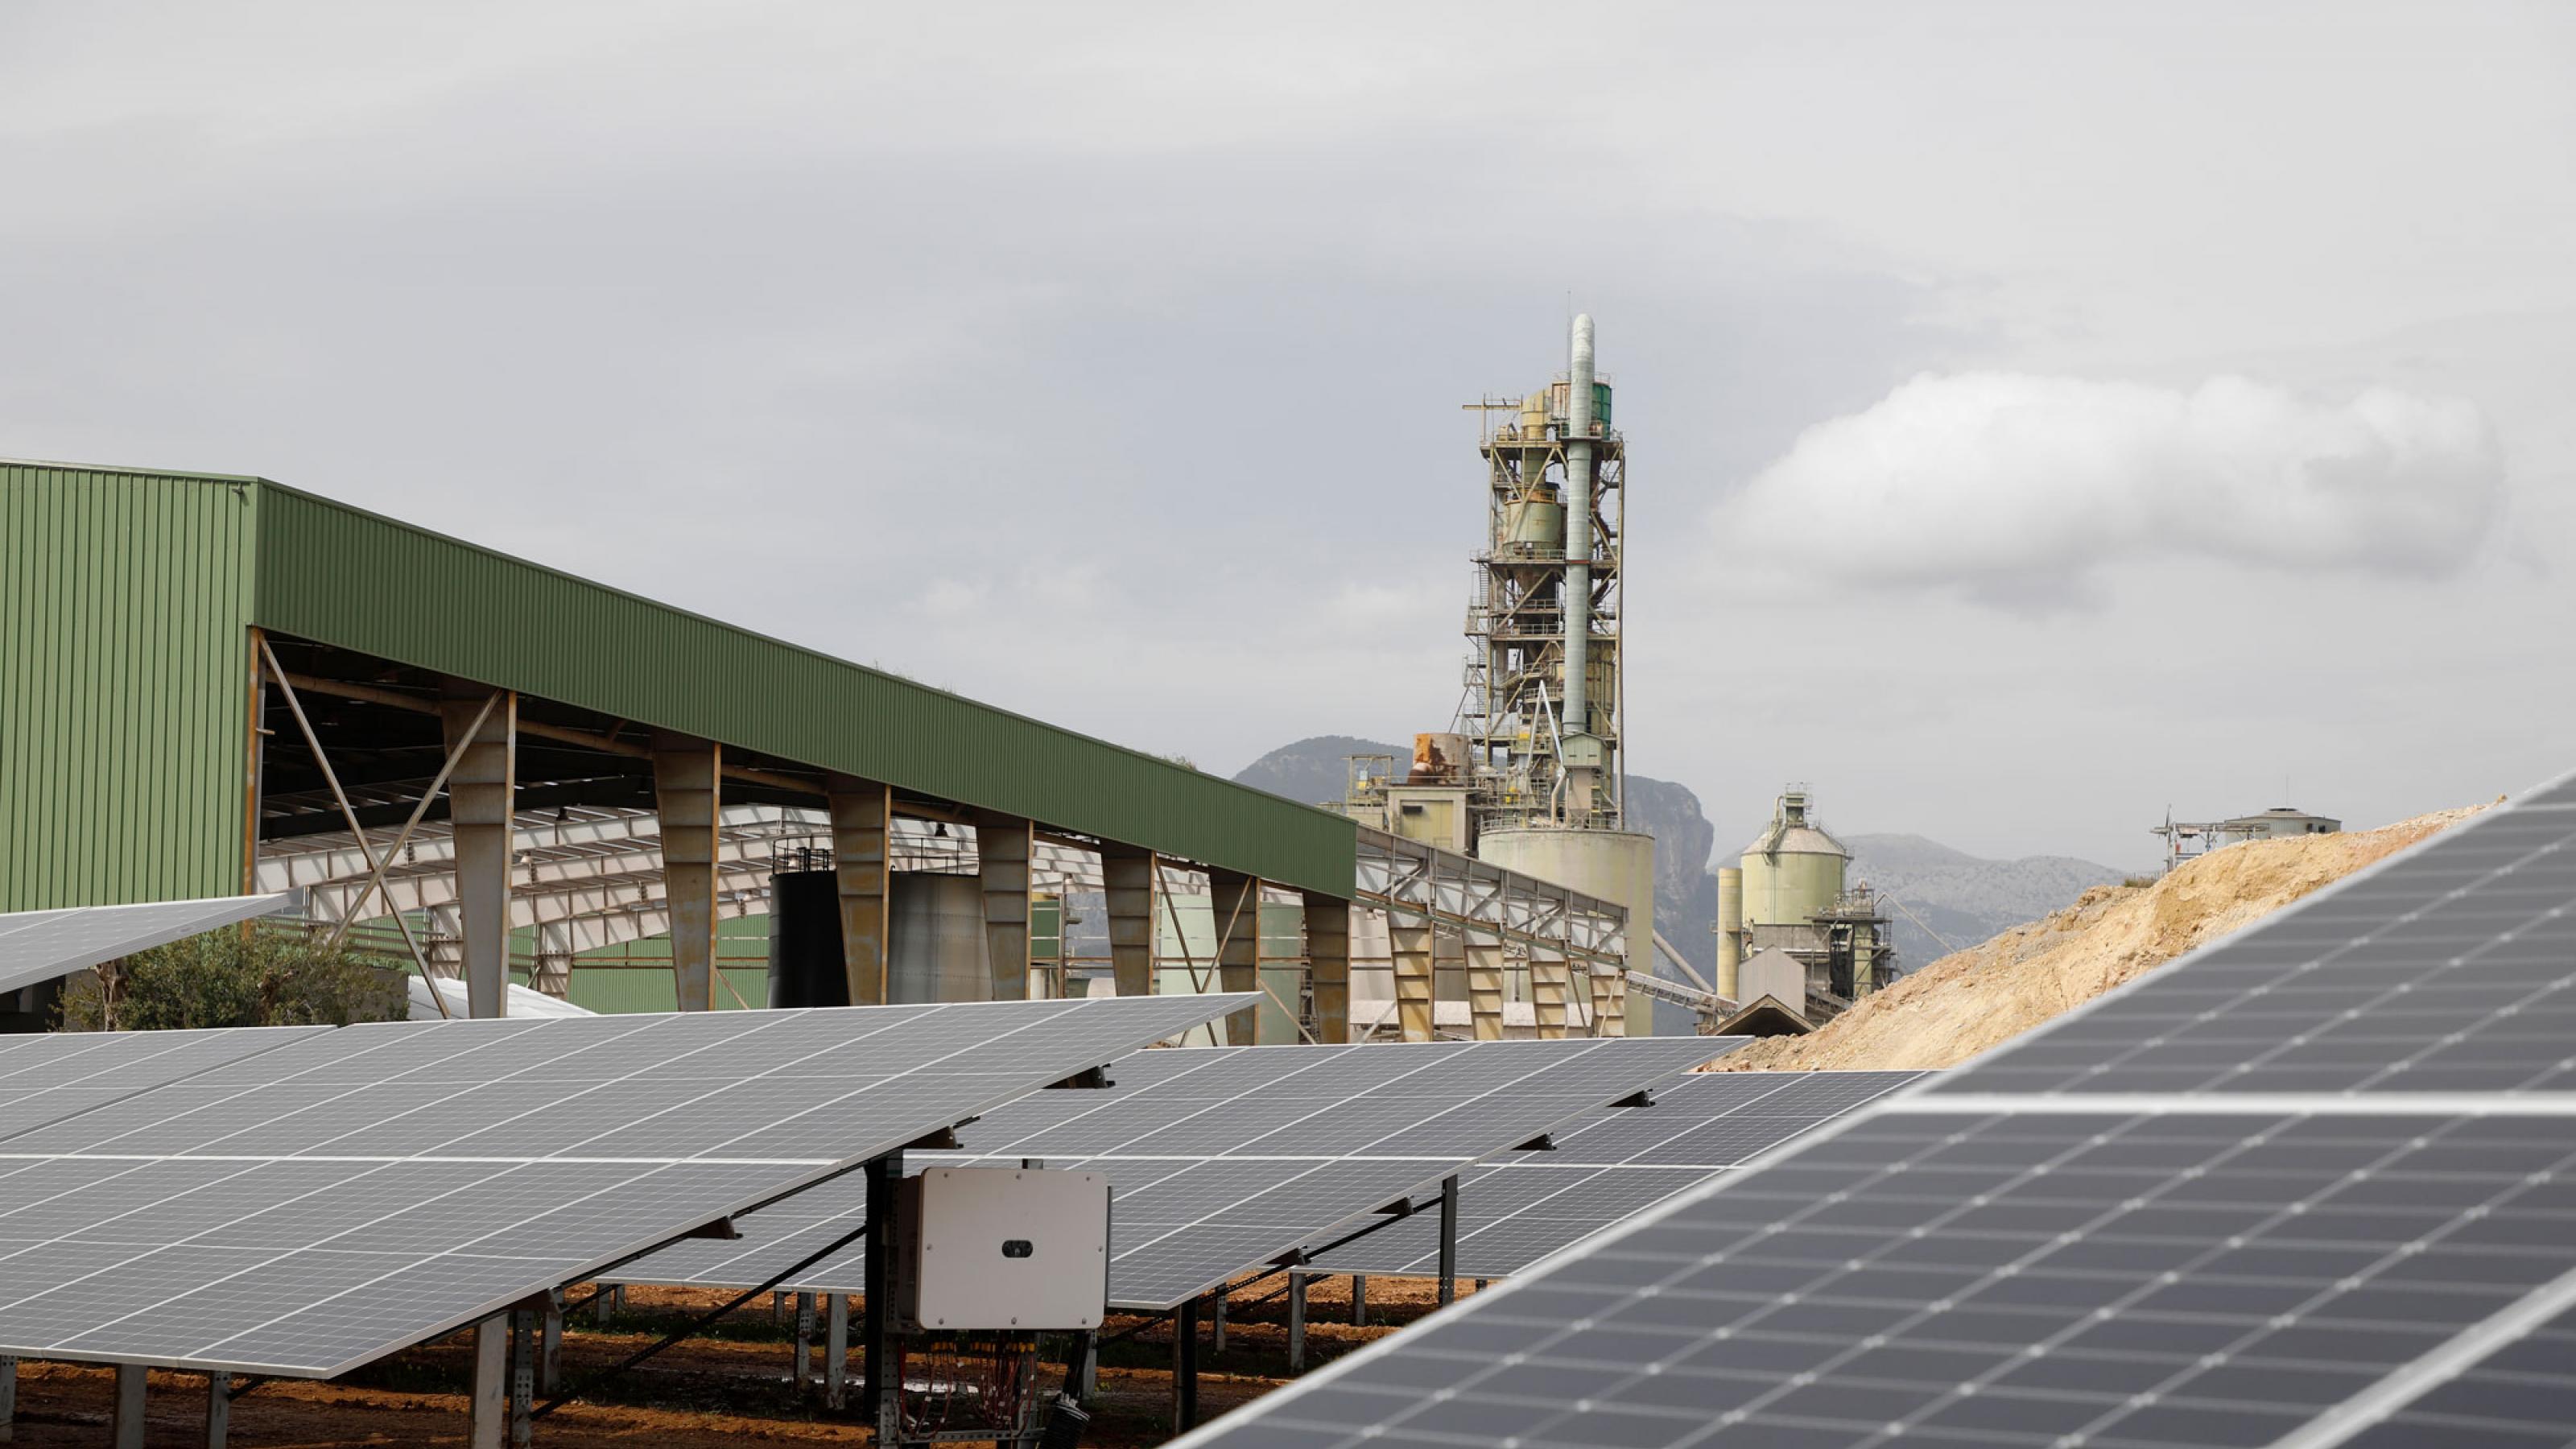 Auf dem Bild ist eine Photovoltaikanlage zu sehen, im Hintergrund stehen Fabrikschlote. Mit Hilfe von Solarstrom wird auf Mallorca in einer ehemaligen Zementfabrik grüner Wasserstoff produziert.